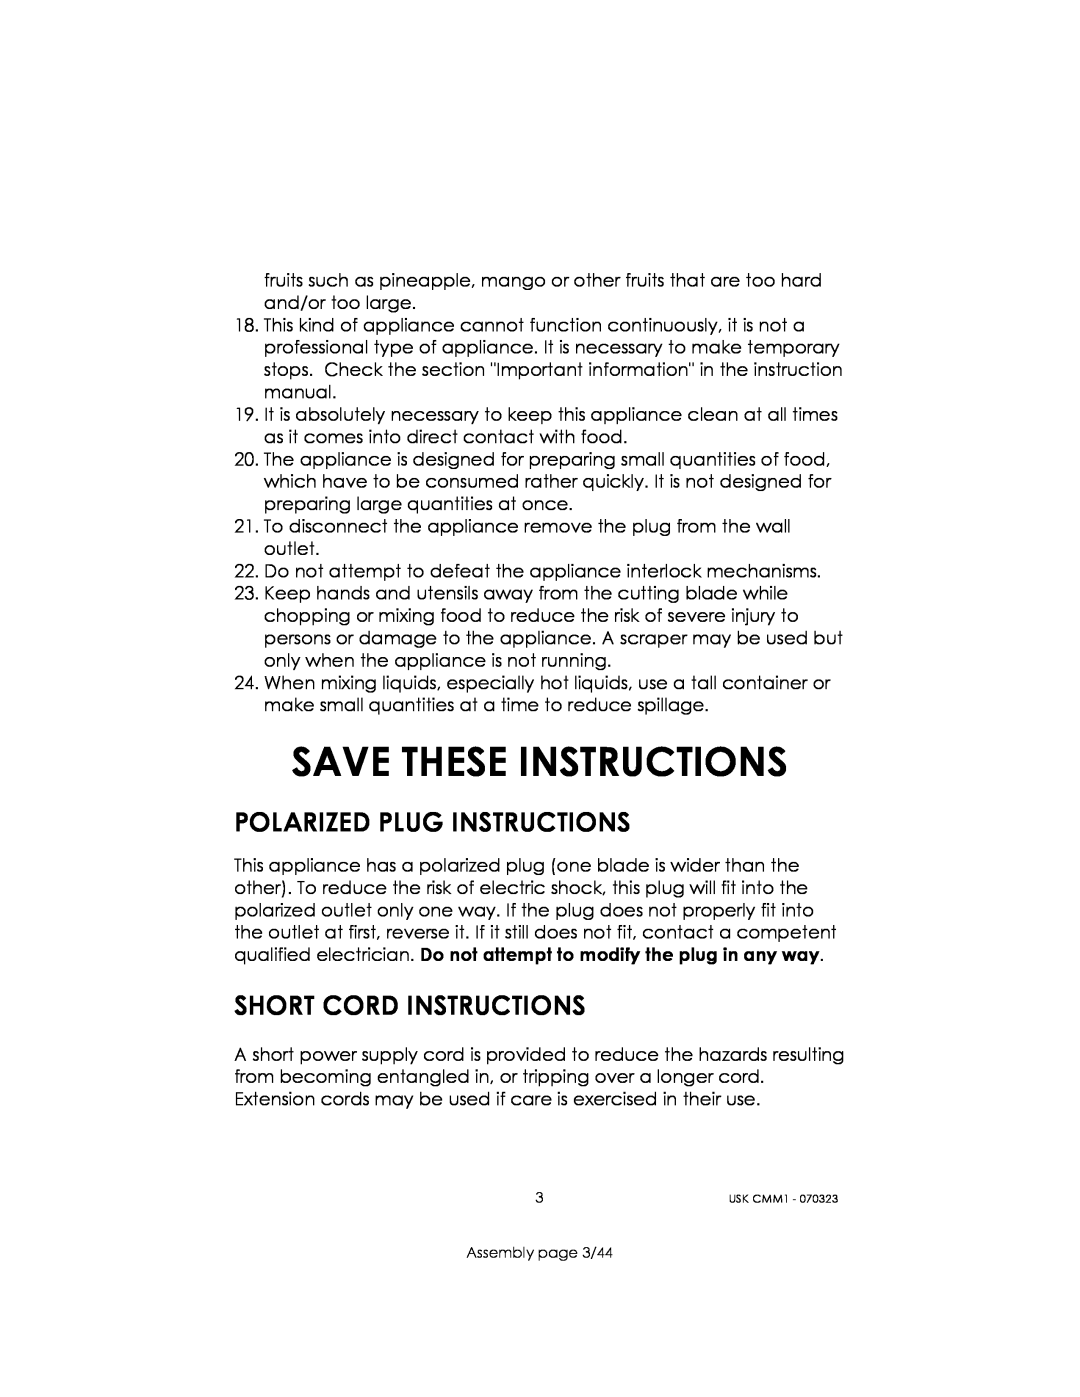 Kalorik USK CMM 1 manual Save These Instructions, Polarized Plug Instructions, Short Cord Instructions 